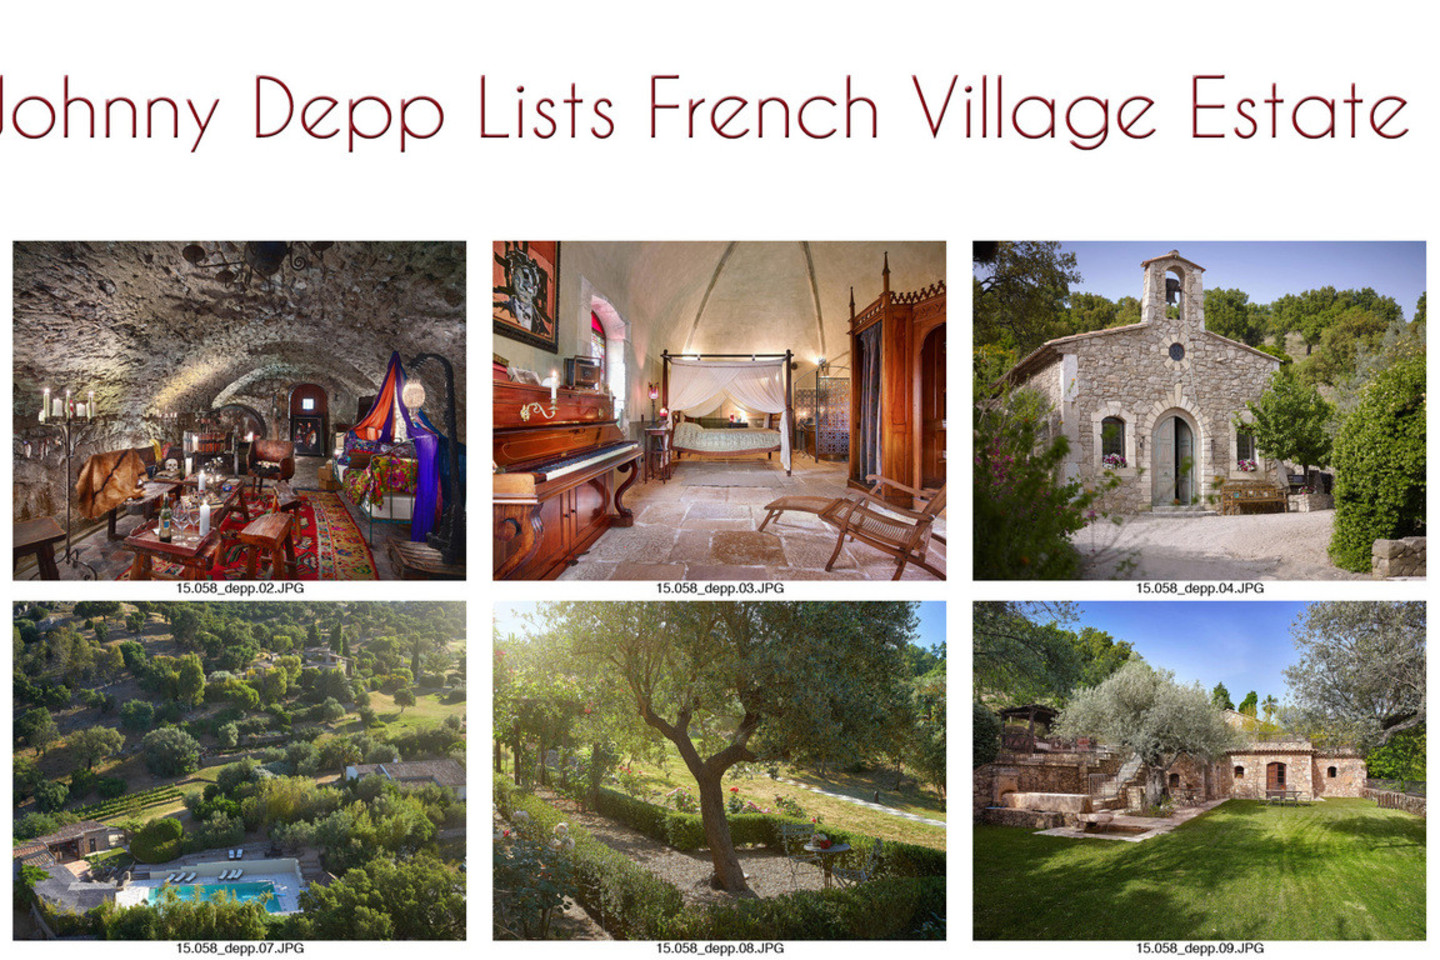 J.Deppas parduoda nuosavą kaimelį Prancūzijoje.<br>ViDA press nuotr.